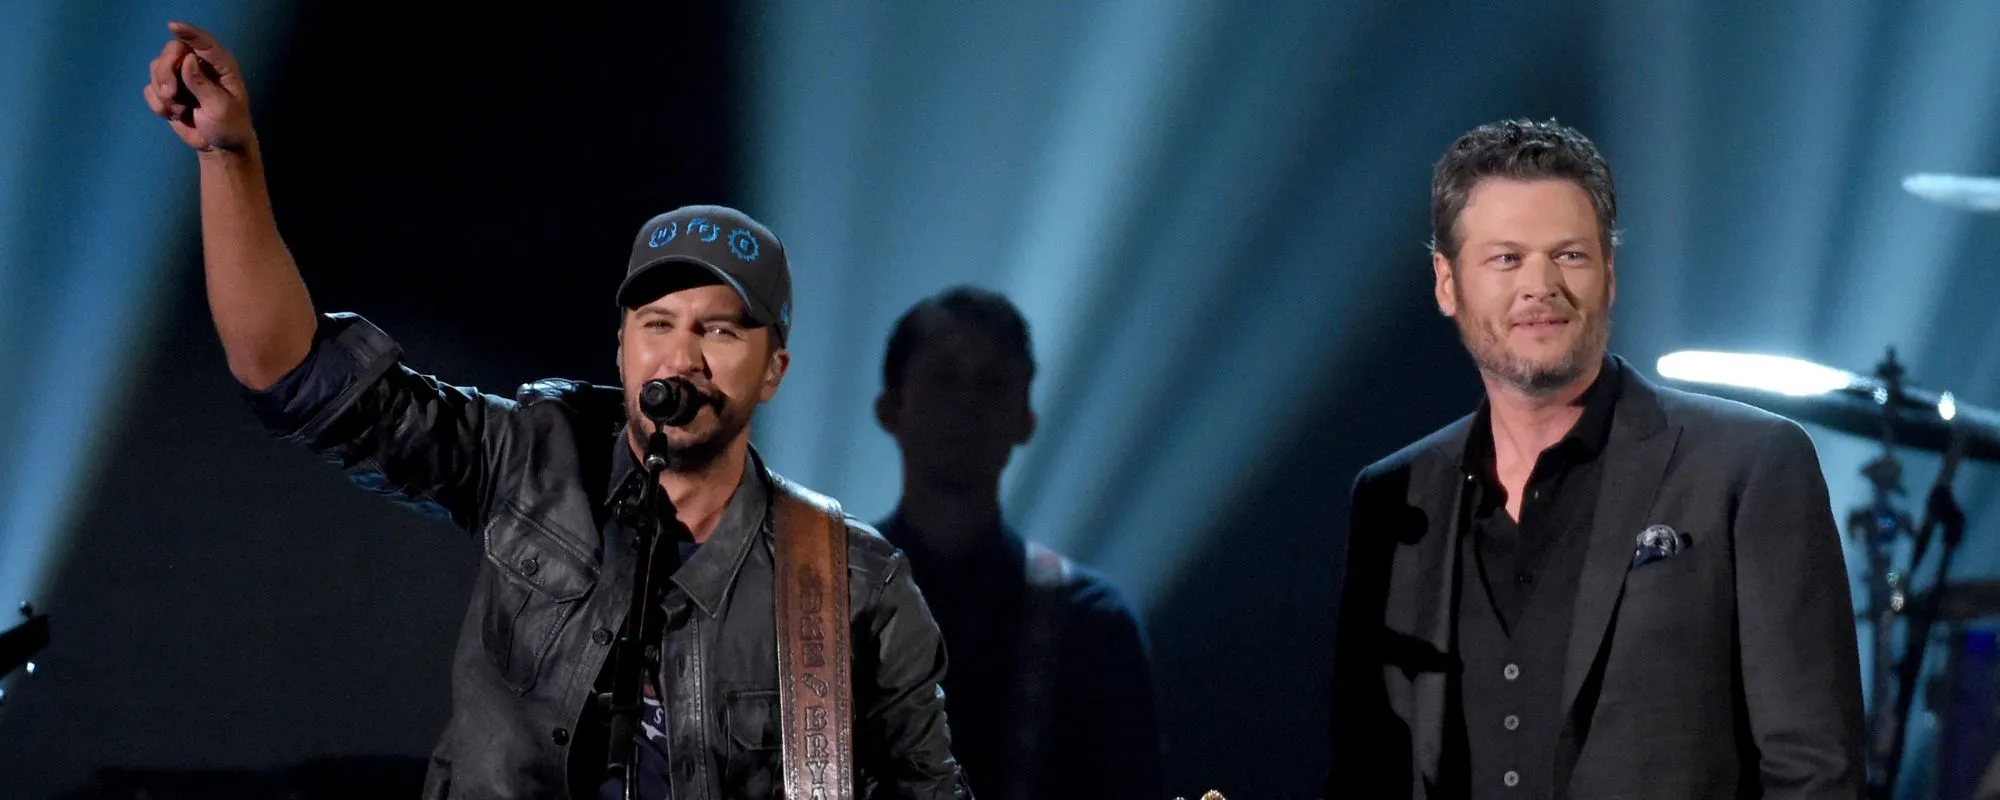 Blake Shelton Says ‘American Idol’ Judge Luke Bryan Pitched Him on Spin-off TV Series